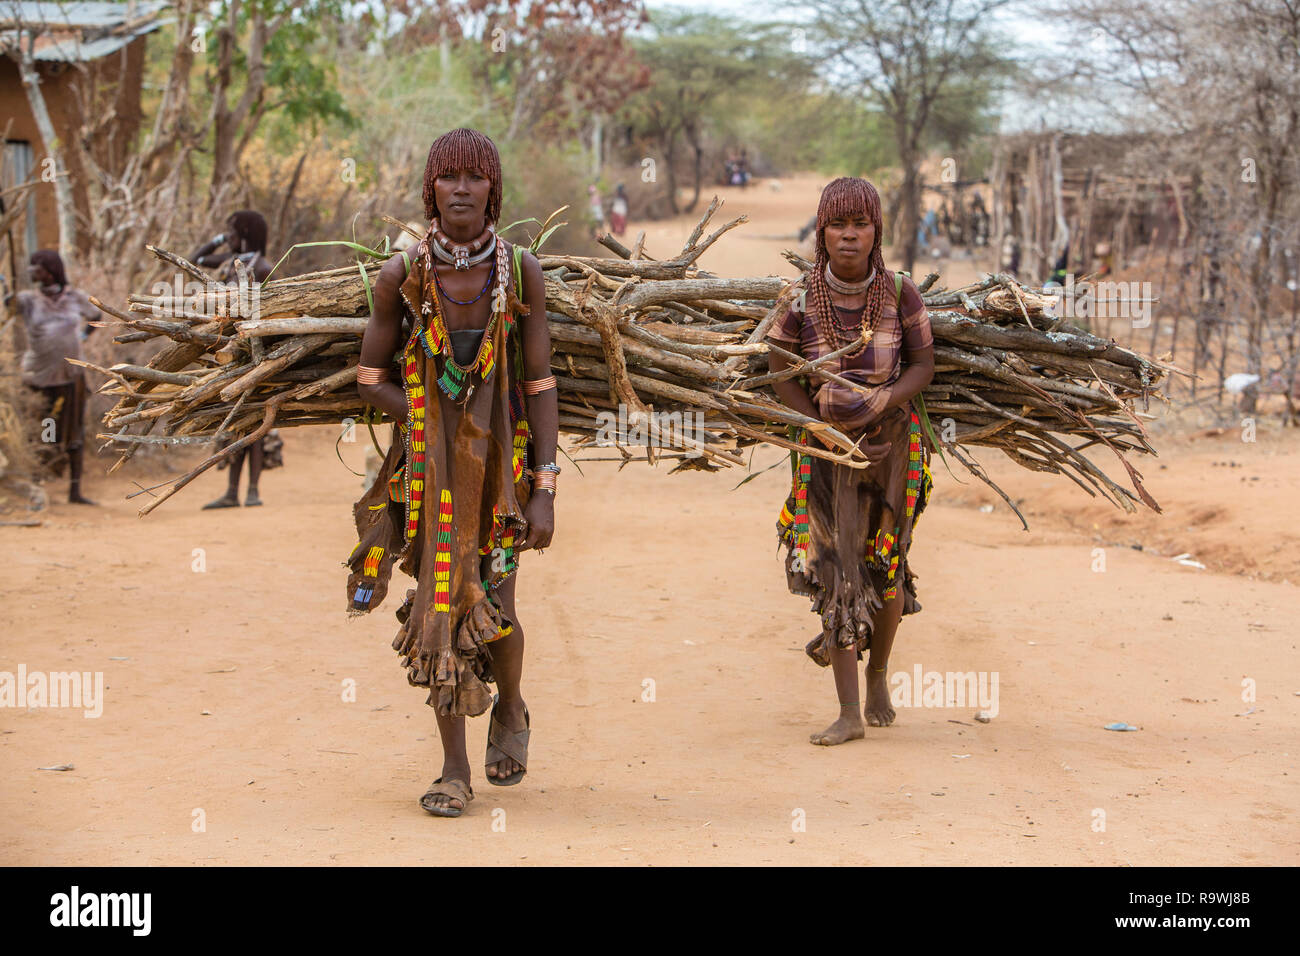 Les femmes de la tribu Hamar transportant des branches d'arbre dans leur village en vallée de l'Omo, Ethiopie Banque D'Images